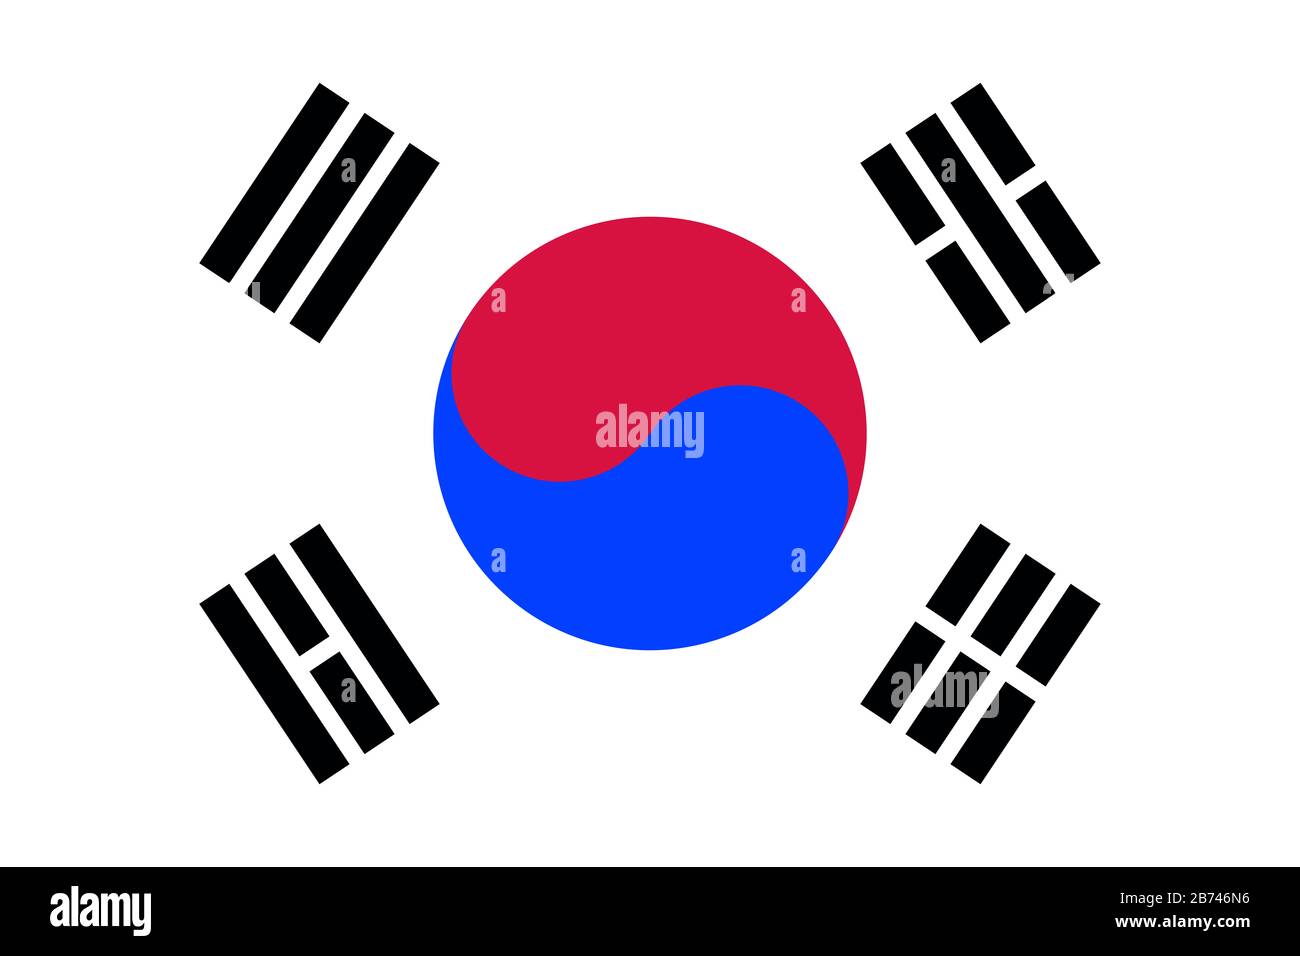 Drapeau de la Corée du Sud - Rapport standard du drapeau coréen - mode couleur RVB réel Banque D'Images